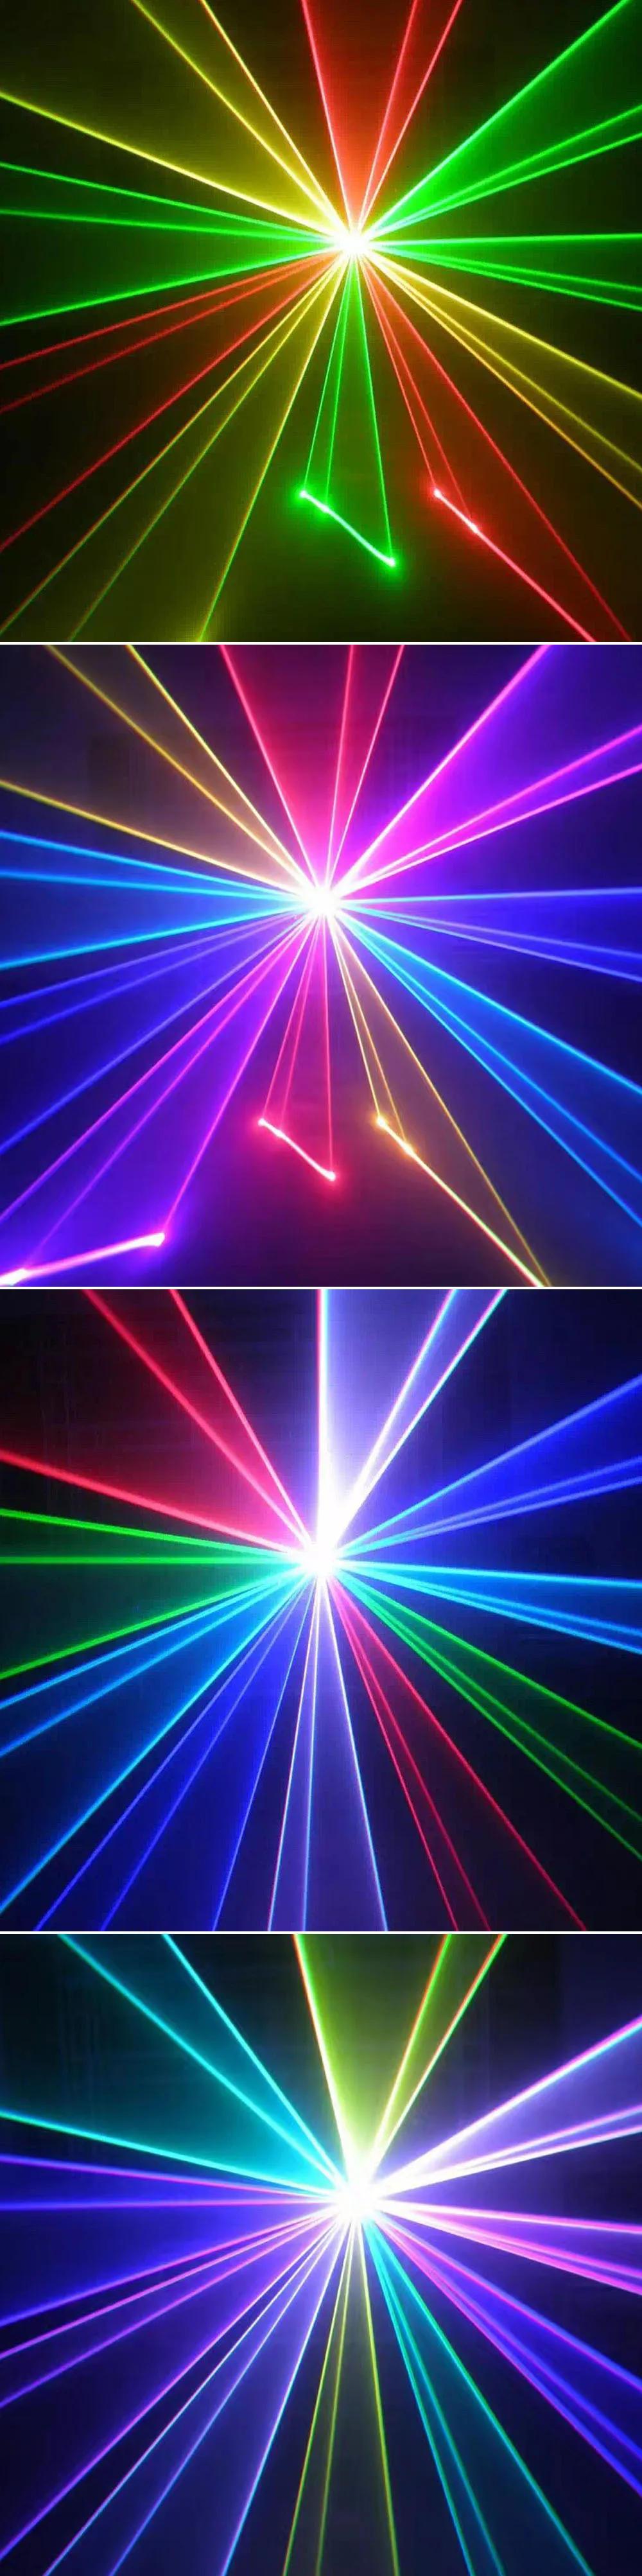 DJ лазерный свет этапа Цвет 5 Вт (3/4/8/10 W) моделей RGB проектора 3 W светодиодный сценический эффект освещения для дискотек света Рождество